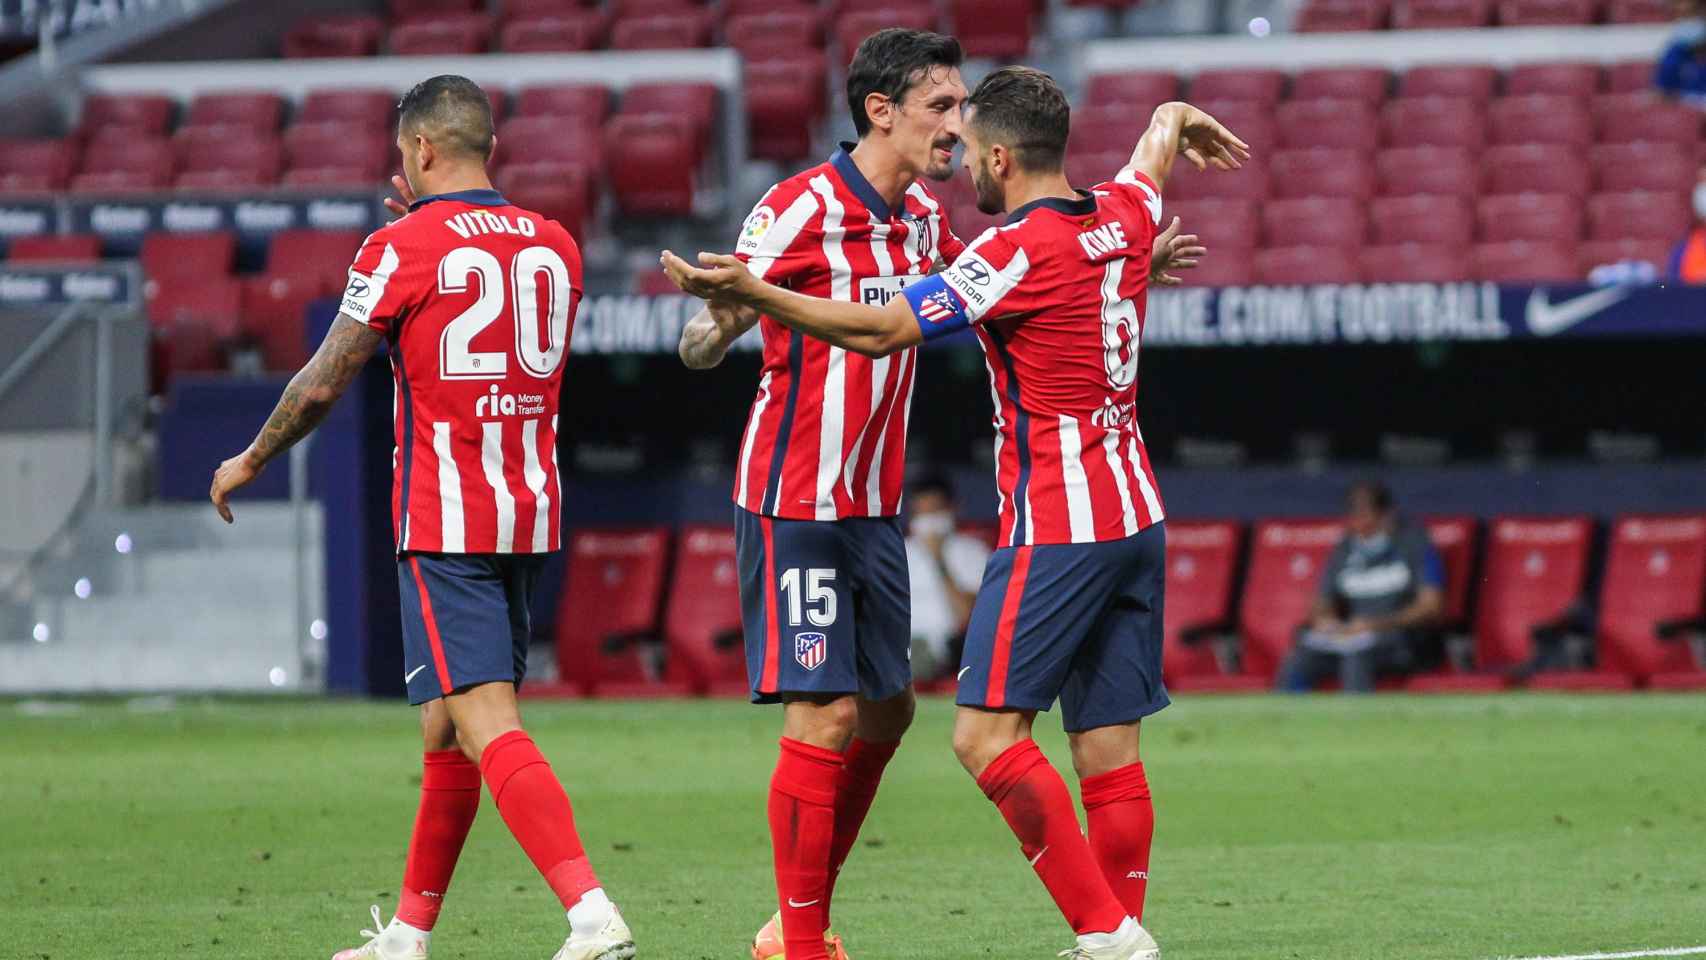 Los jugadores del Atlético celebran un gol en un partido de fútbol correspondiente a La Liga / EP